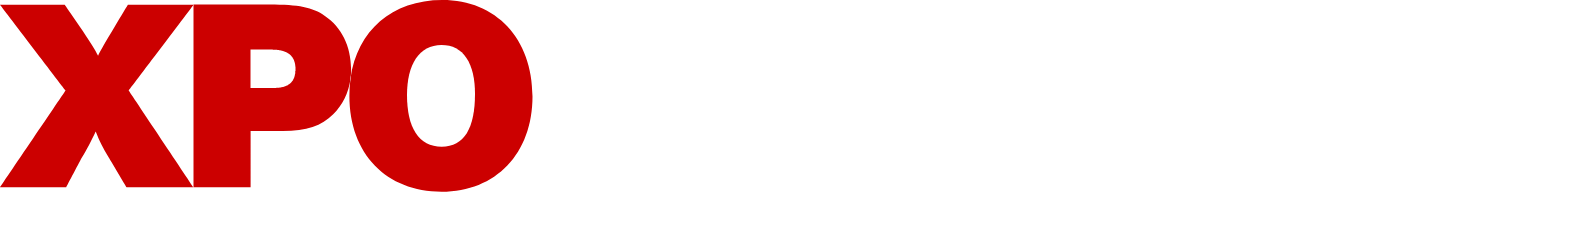 XPO Logistics logo grand pour les fonds sombres (PNG transparent)